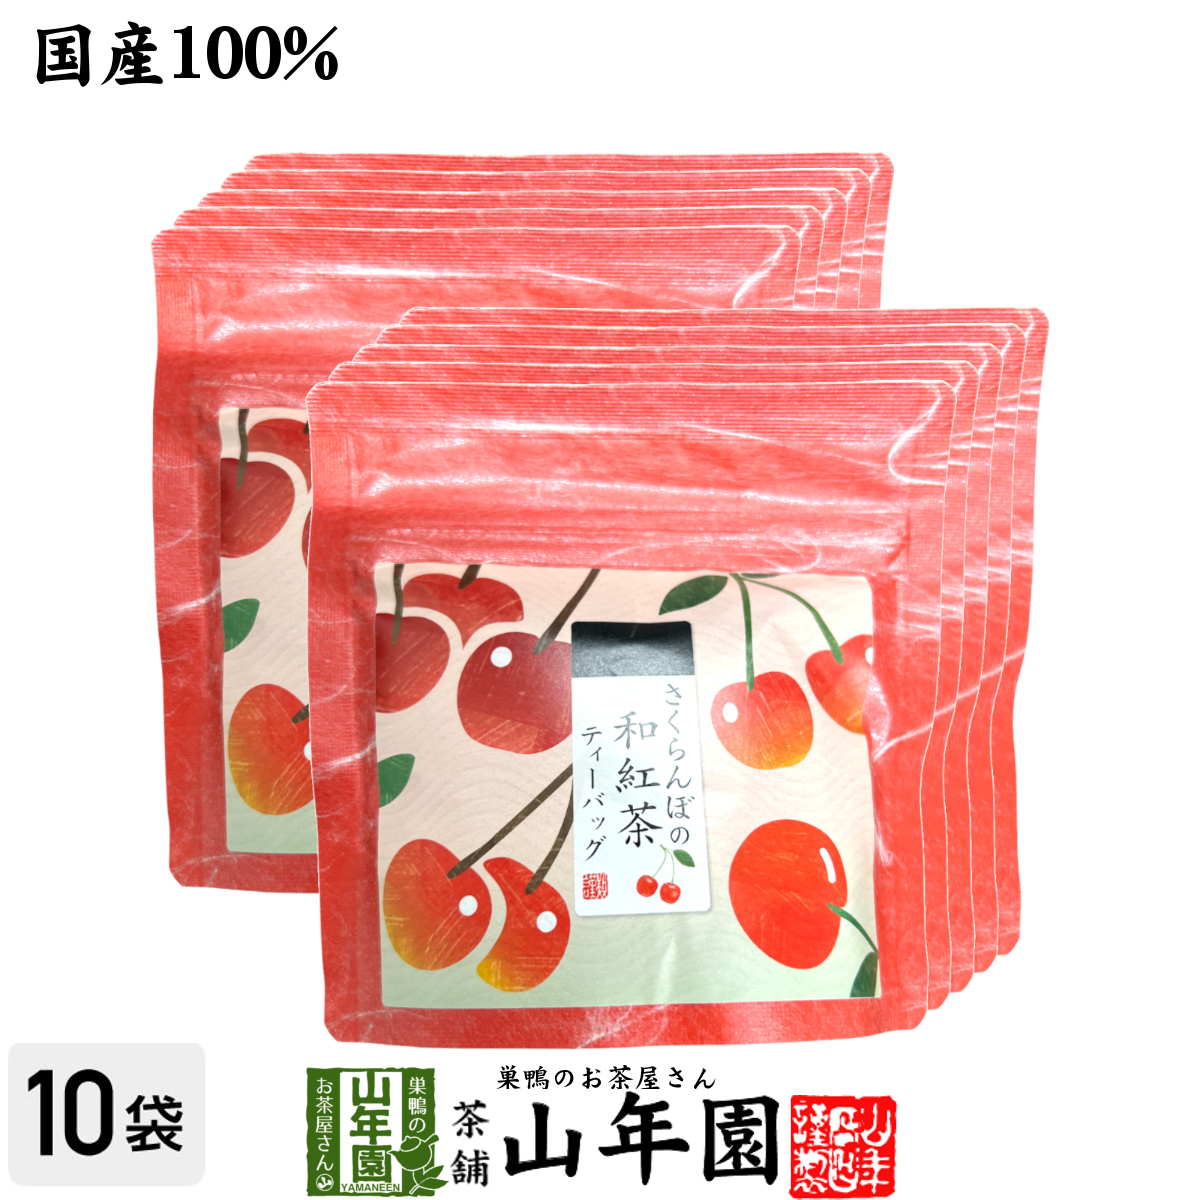 国産紅茶 さくらんぼと和紅茶 2g×5パック×10袋セット